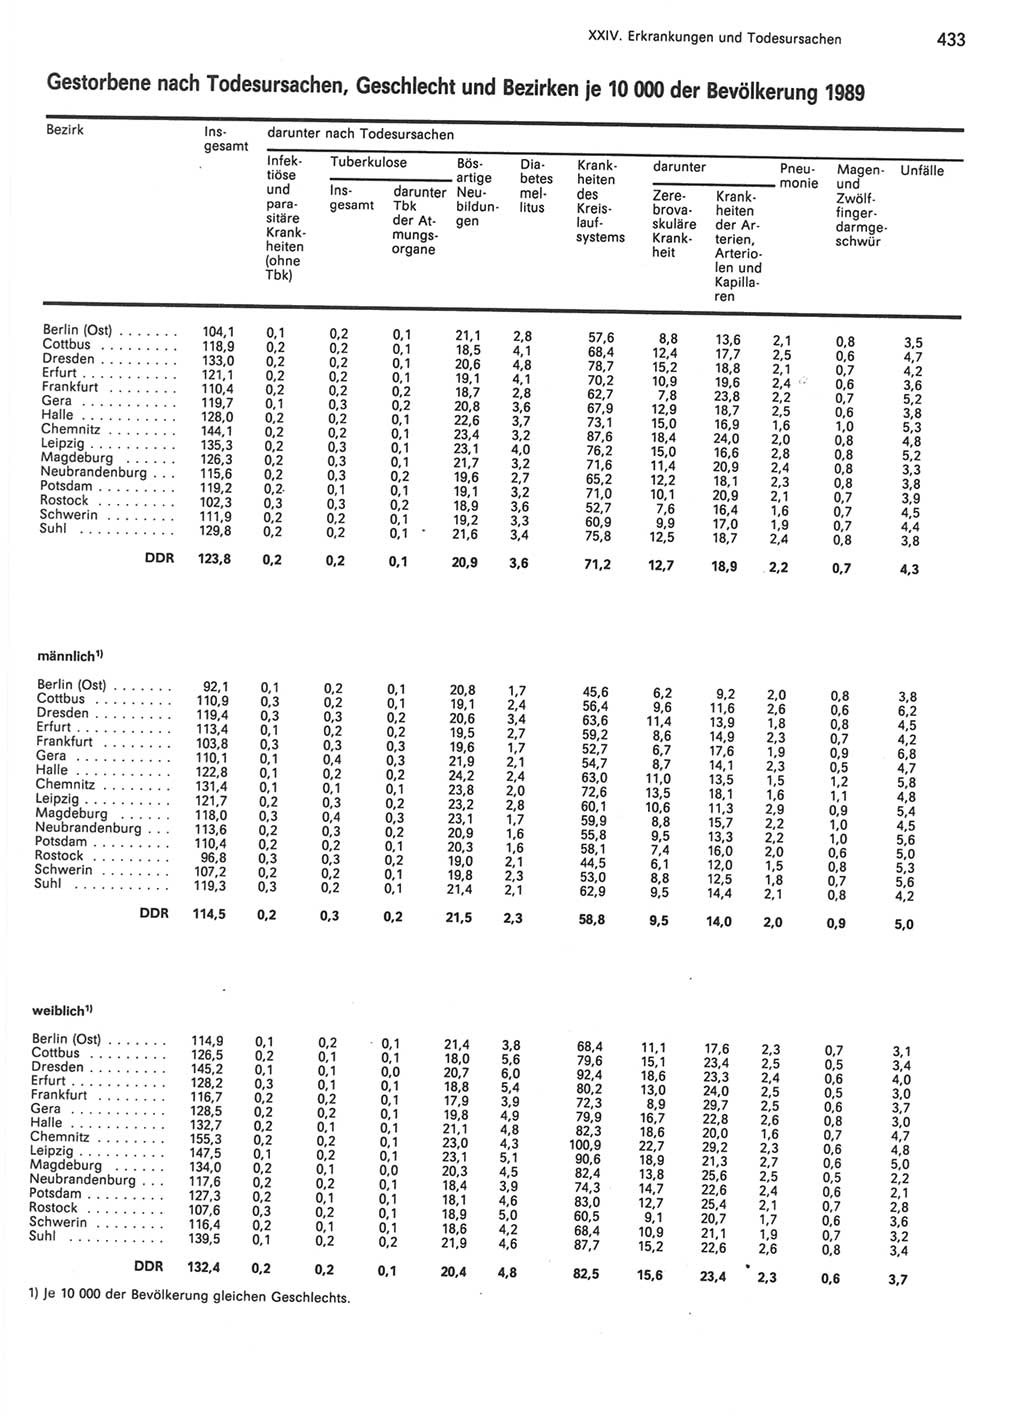 Statistisches Jahrbuch der Deutschen Demokratischen Republik (DDR) 1990, Seite 433 (Stat. Jb. DDR 1990, S. 433)